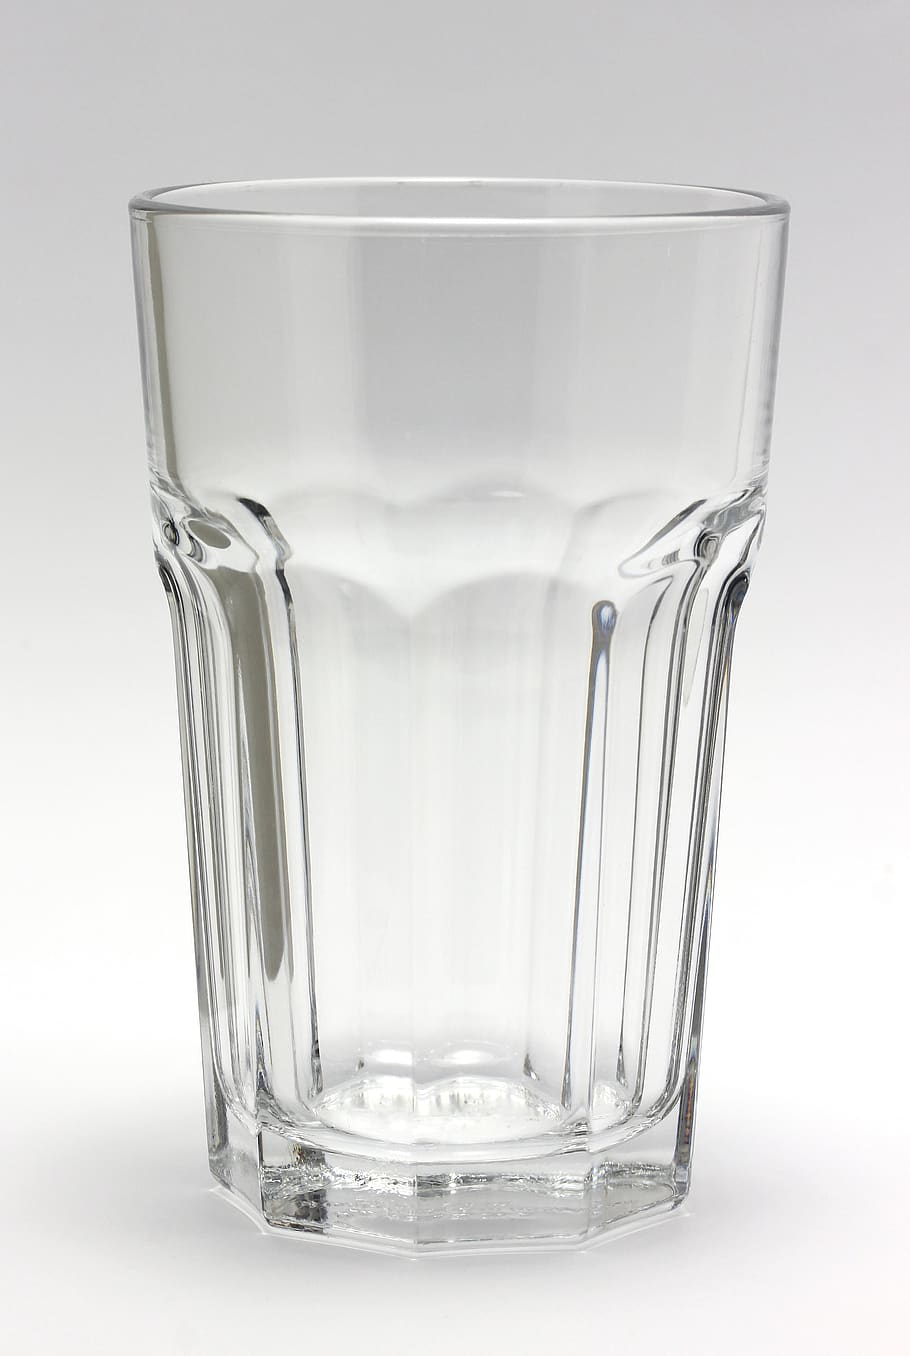 vidrio, claro, cristal, vaso de agua, equipo doméstico, comida y bebida, foto de estudio, vaso, bebida, refresco